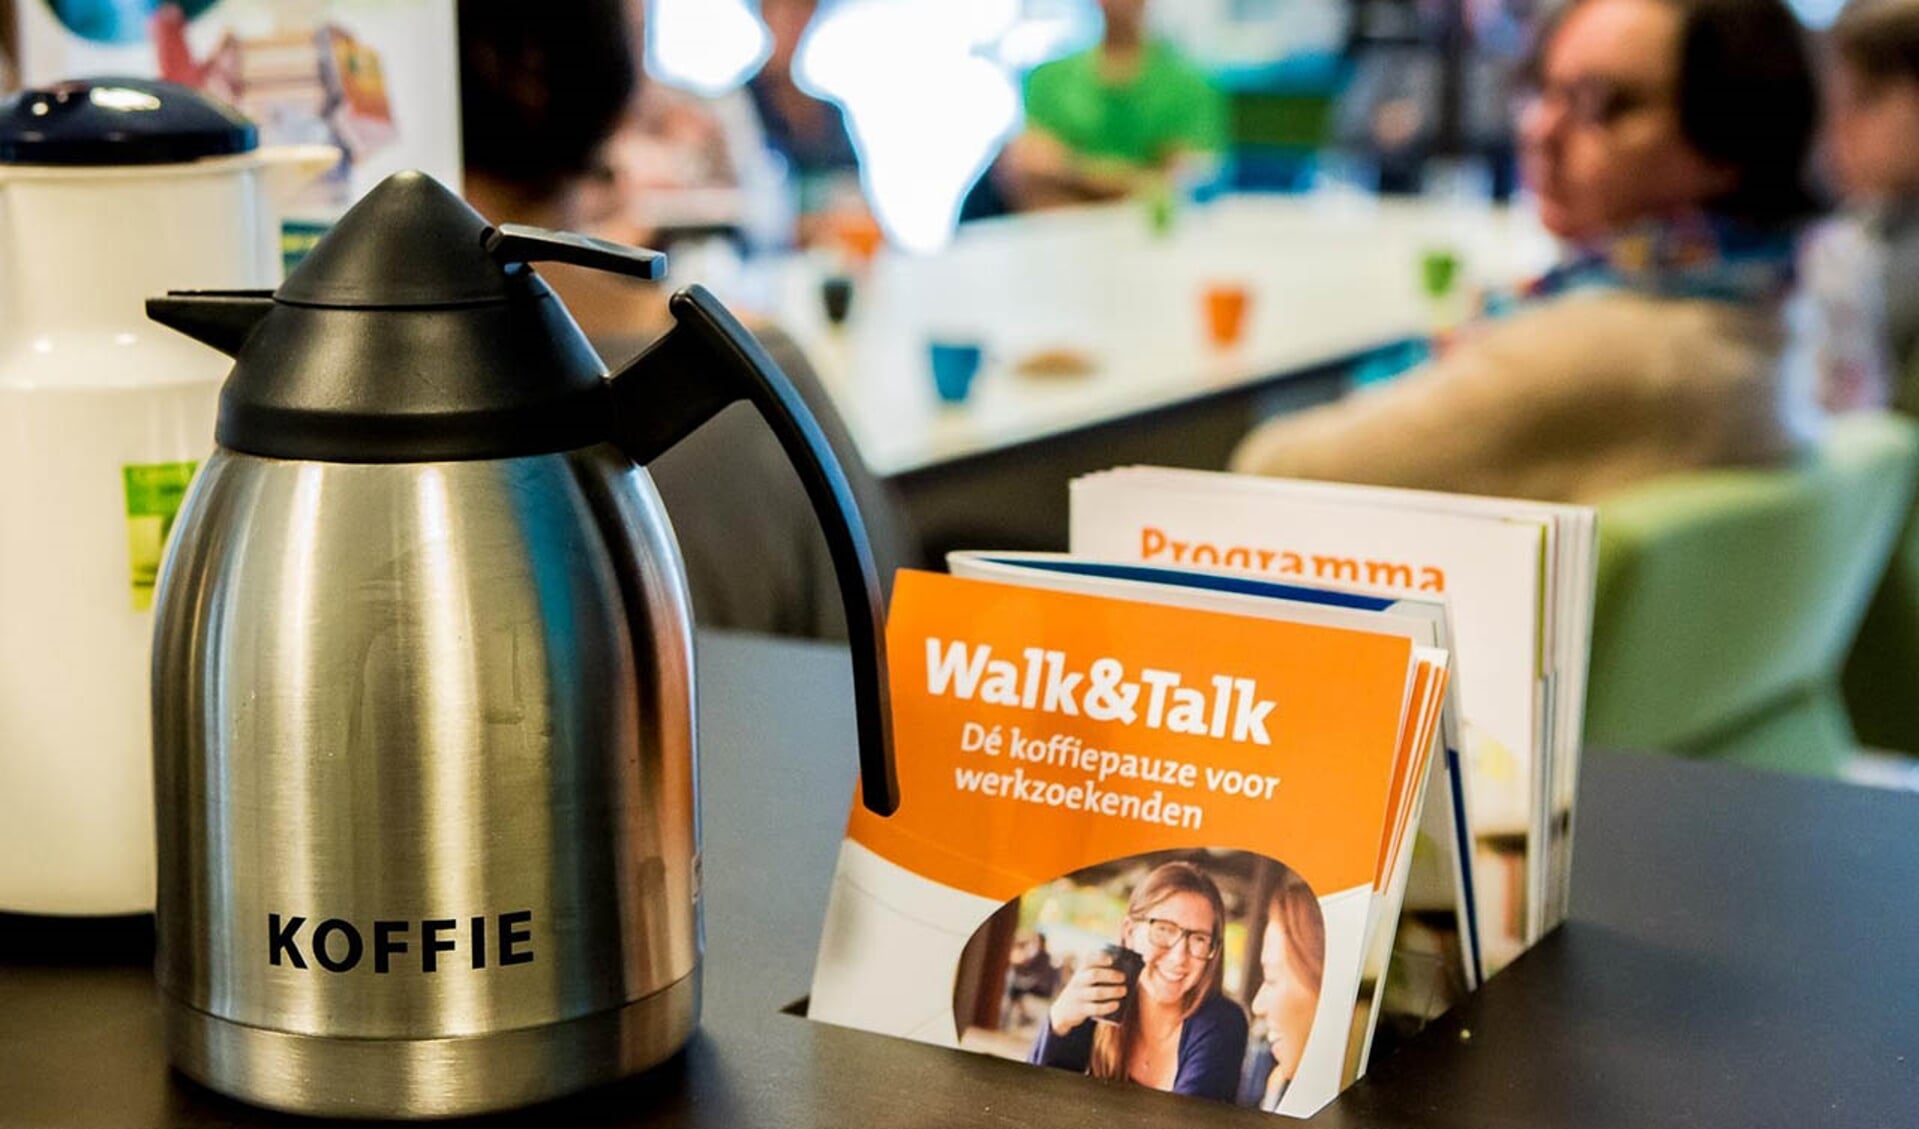 Walk&Talk: Dé koffiepauze voor werkzoekenden in de bieb